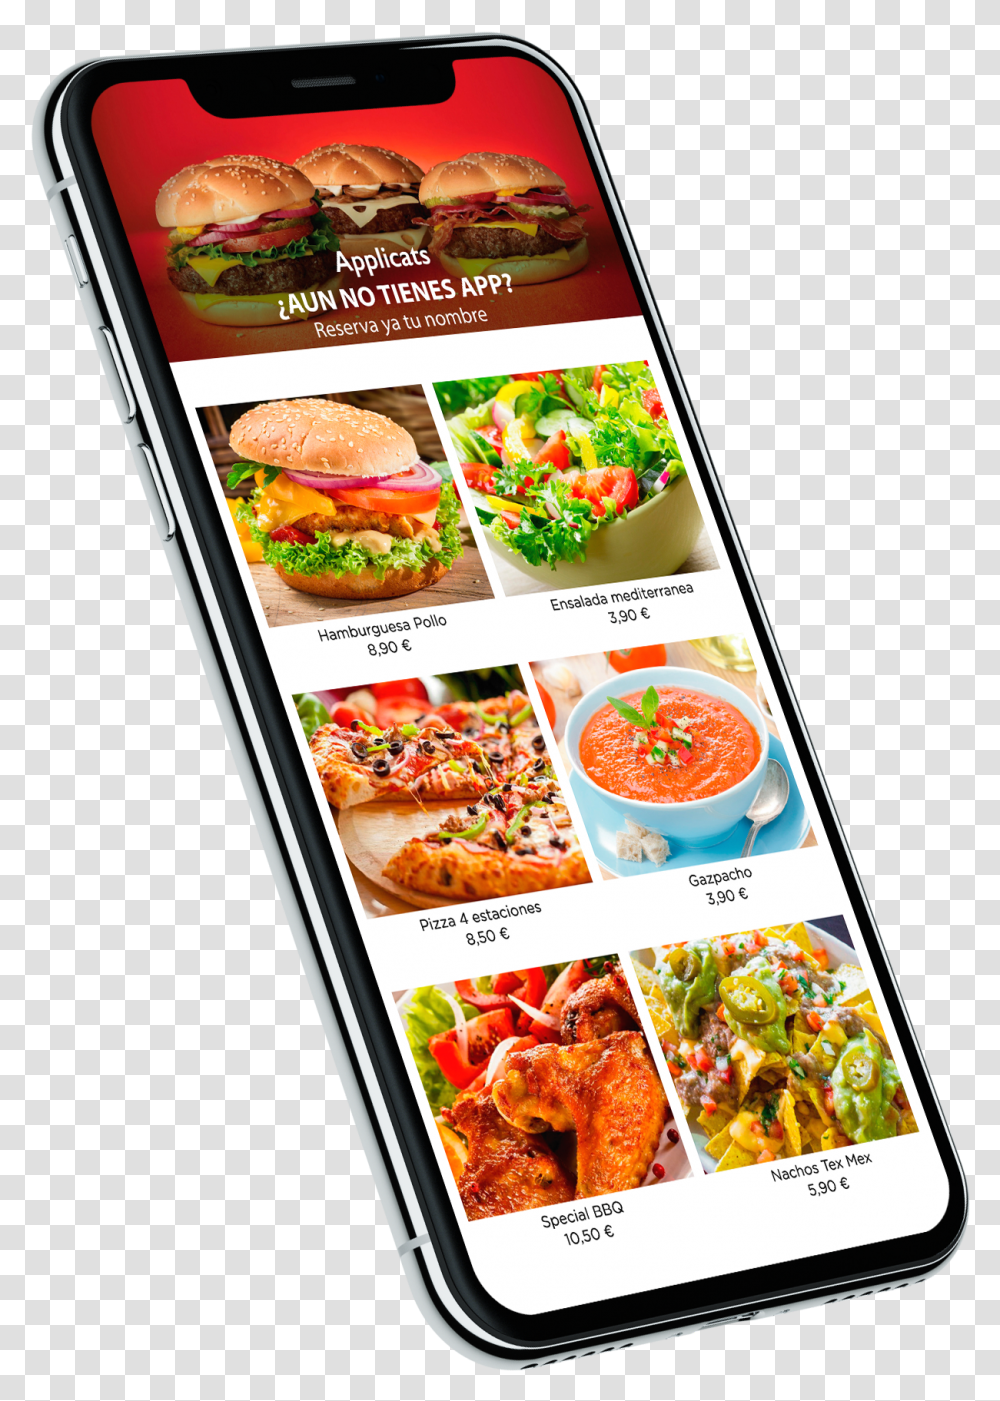 Applicats Fast Food, Menu, Burger, Advertisement Transparent Png